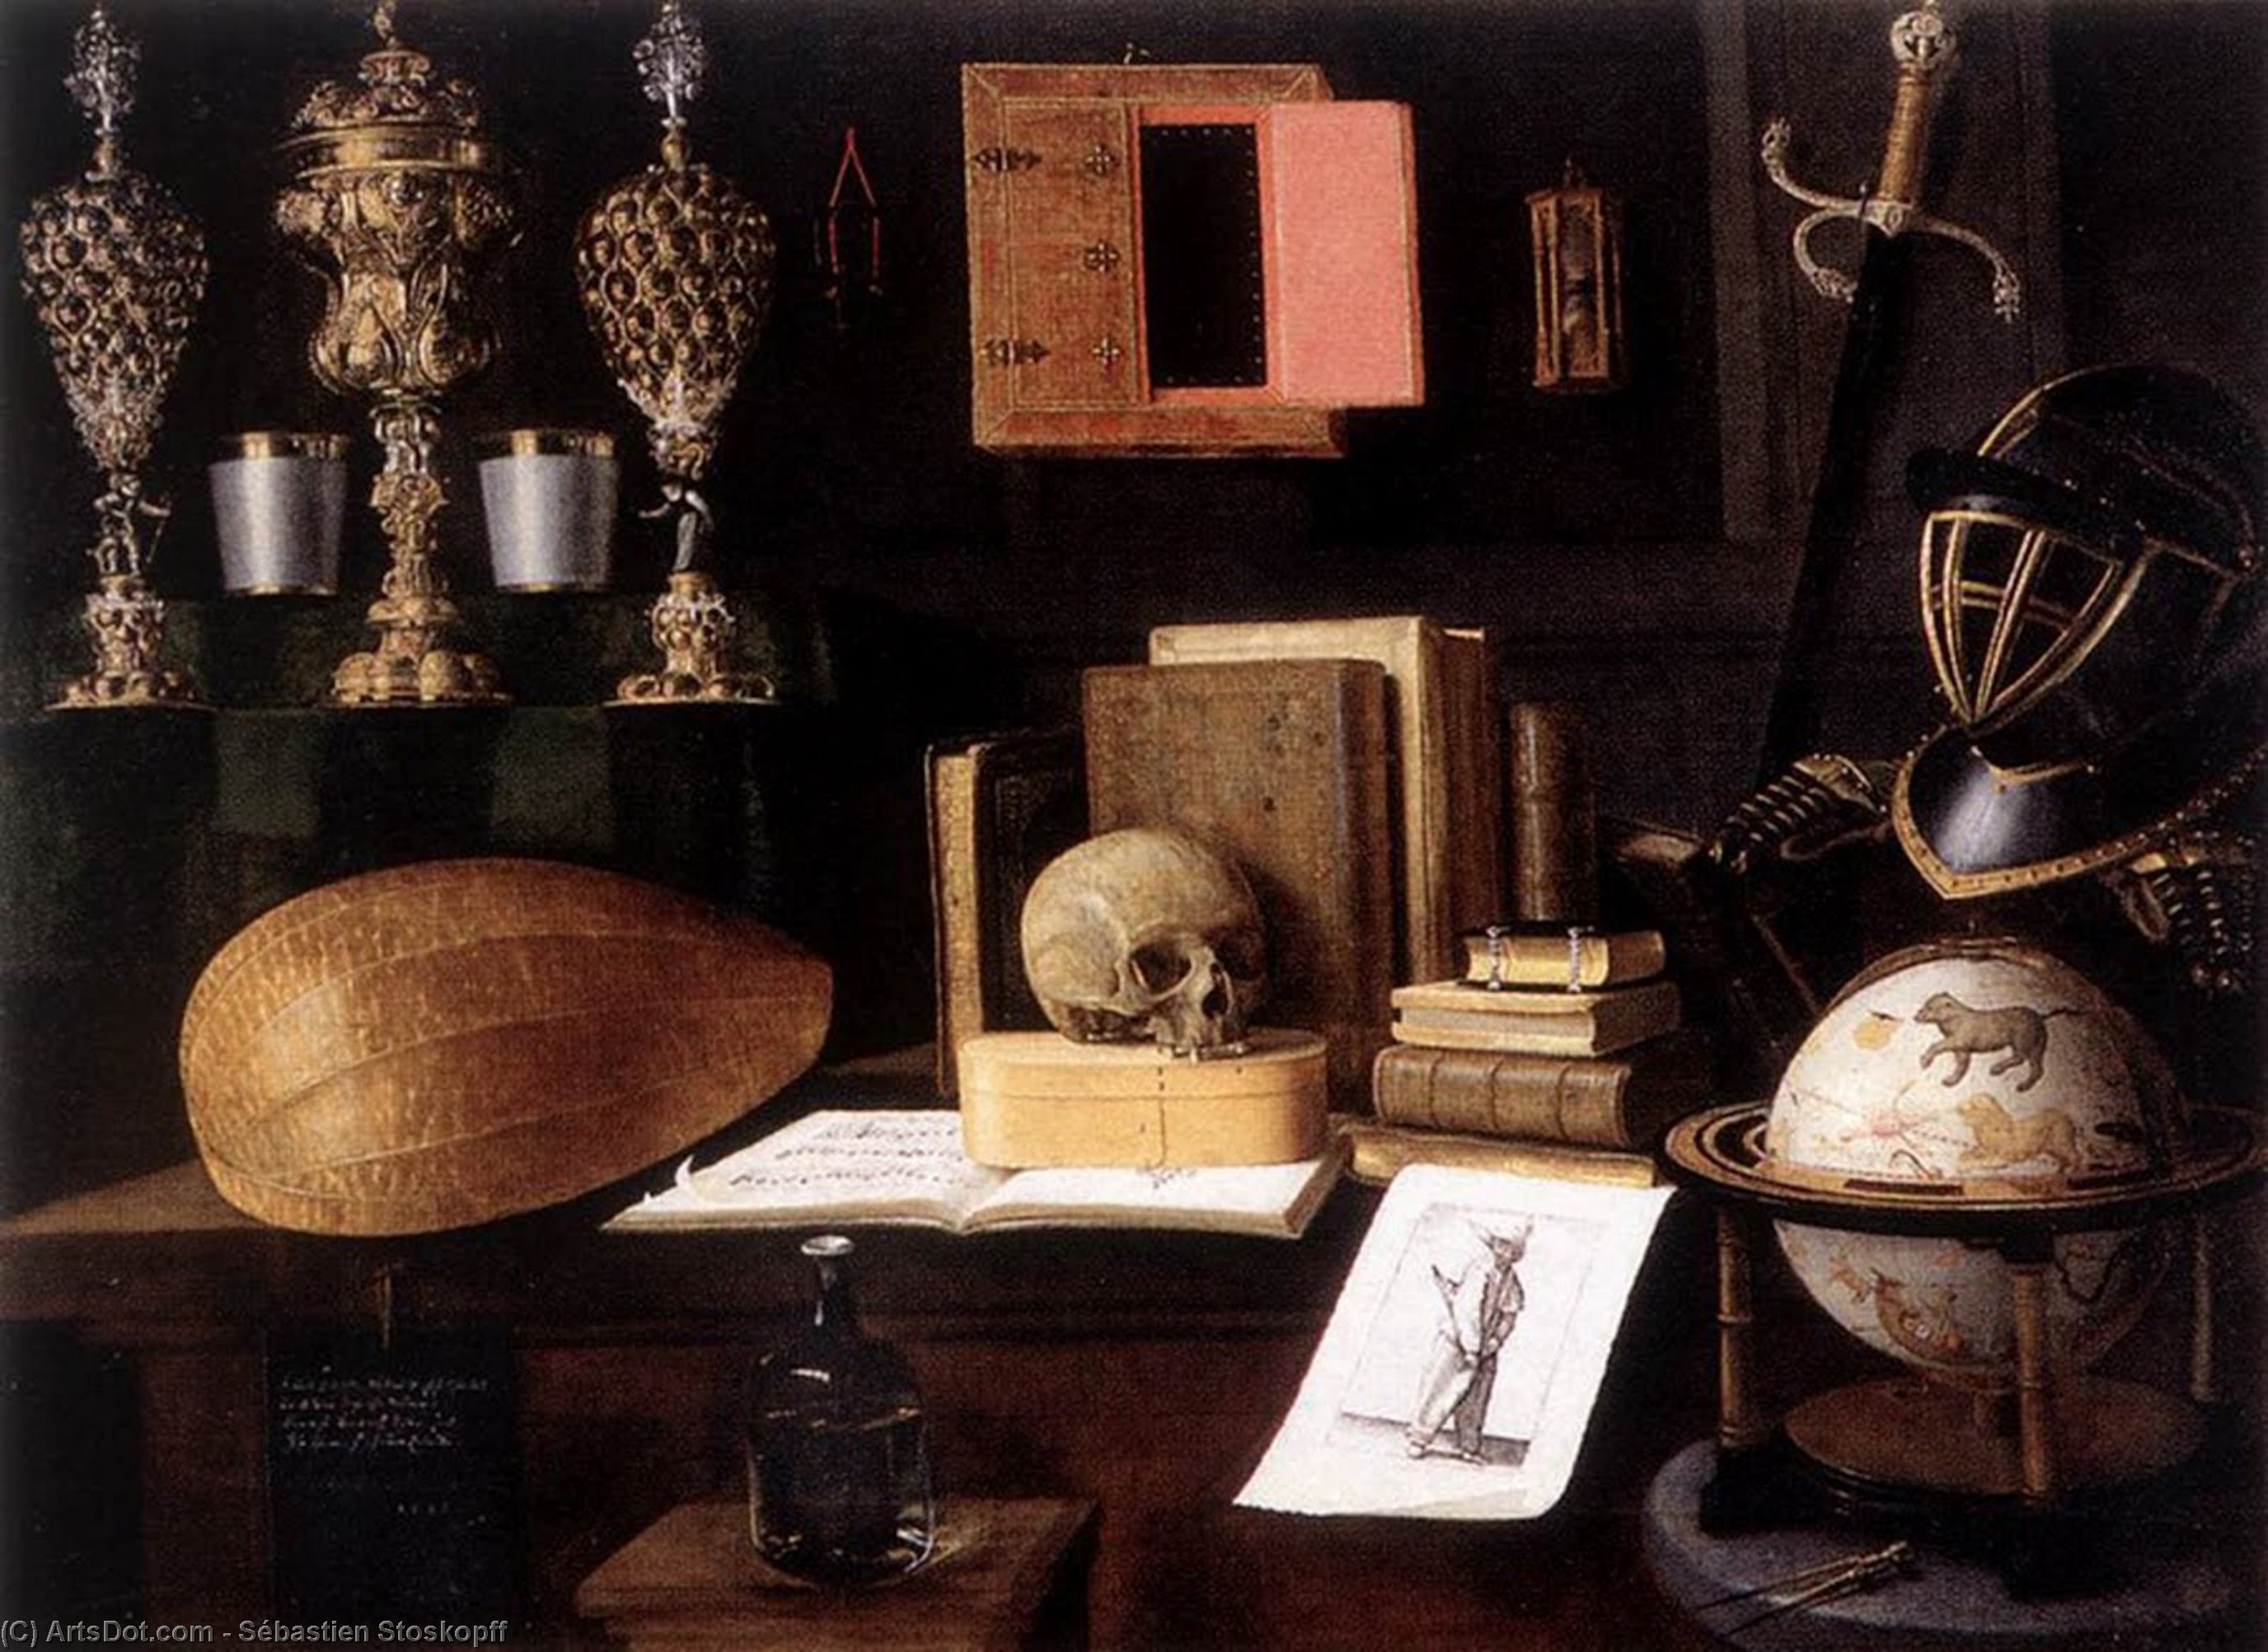 WikiOO.org - Encyclopedia of Fine Arts - Malba, Artwork Sébastien Stoskopff - The Great Vanity Still-Life